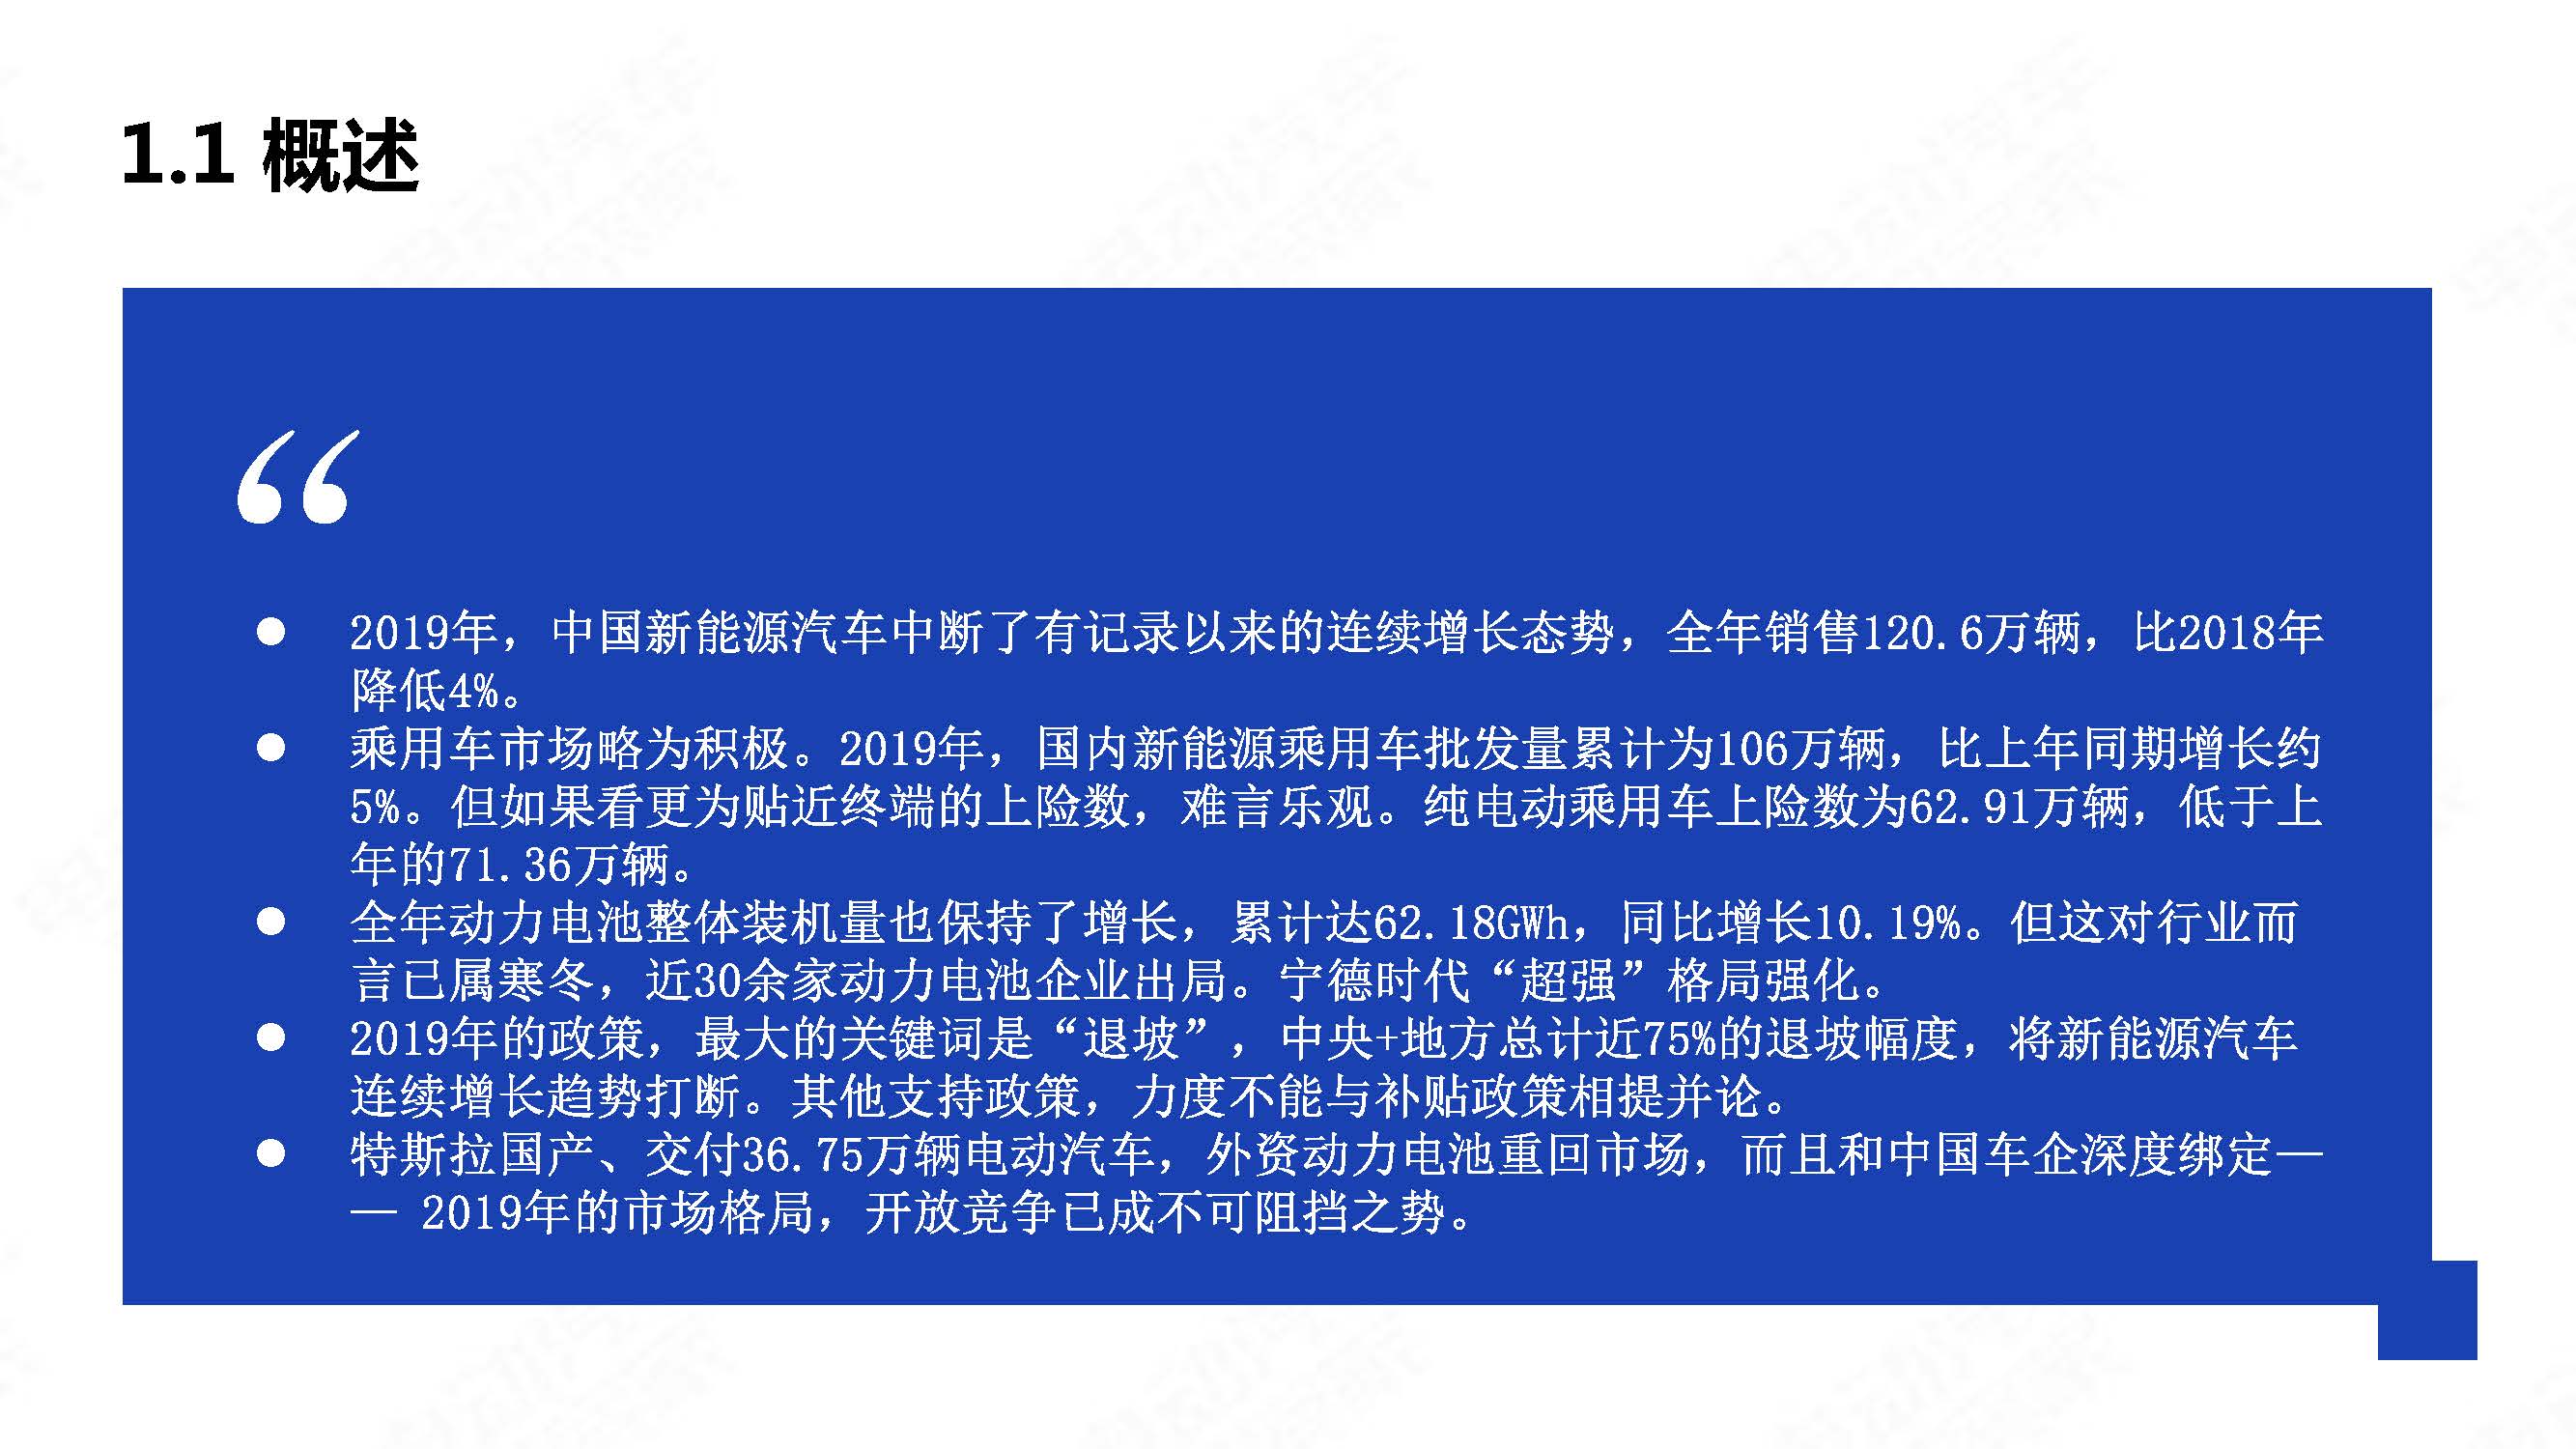 中国新能源汽车产业年度观察2020 简版_页面_04